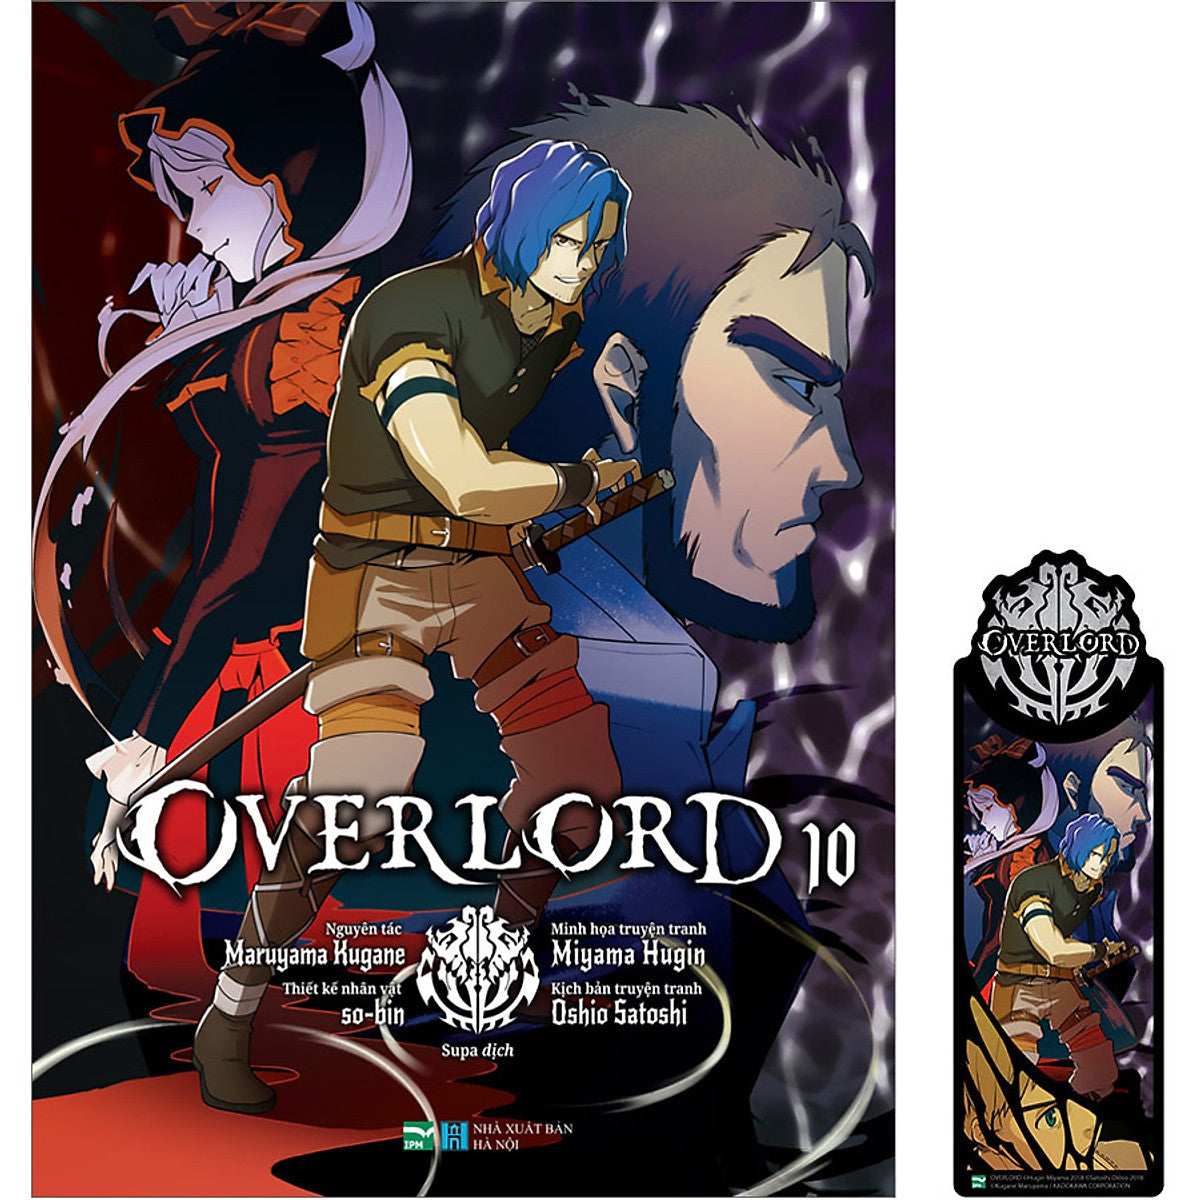 Overlord - 10 (Manga)